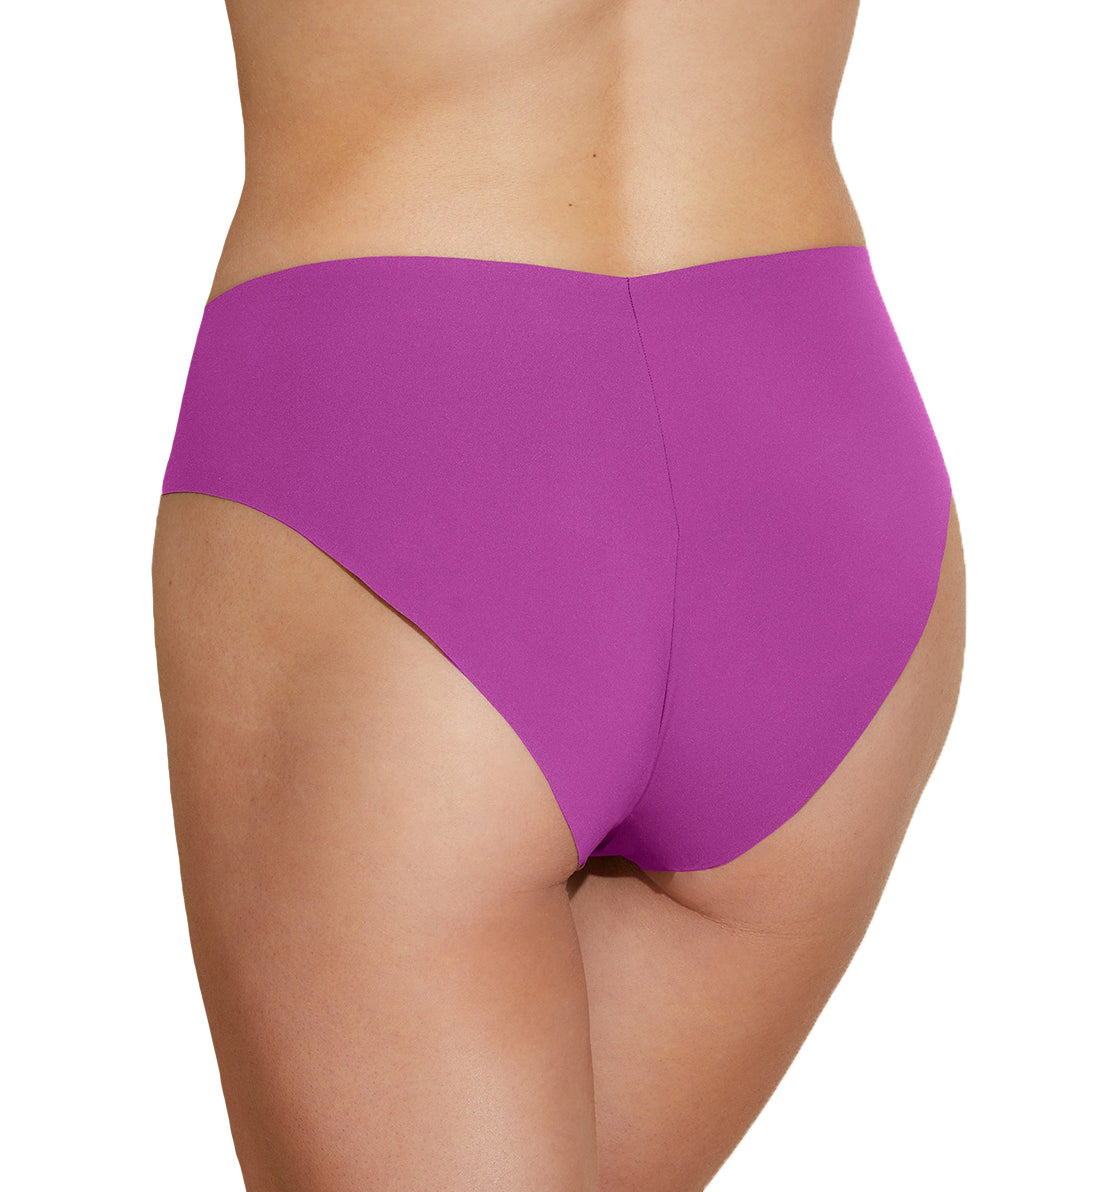 Cosabella Free Cut Micro High Rise Bikini Panty (FRECM0521),Small,Cape Fuchsia - Cape Fuchsia,Small